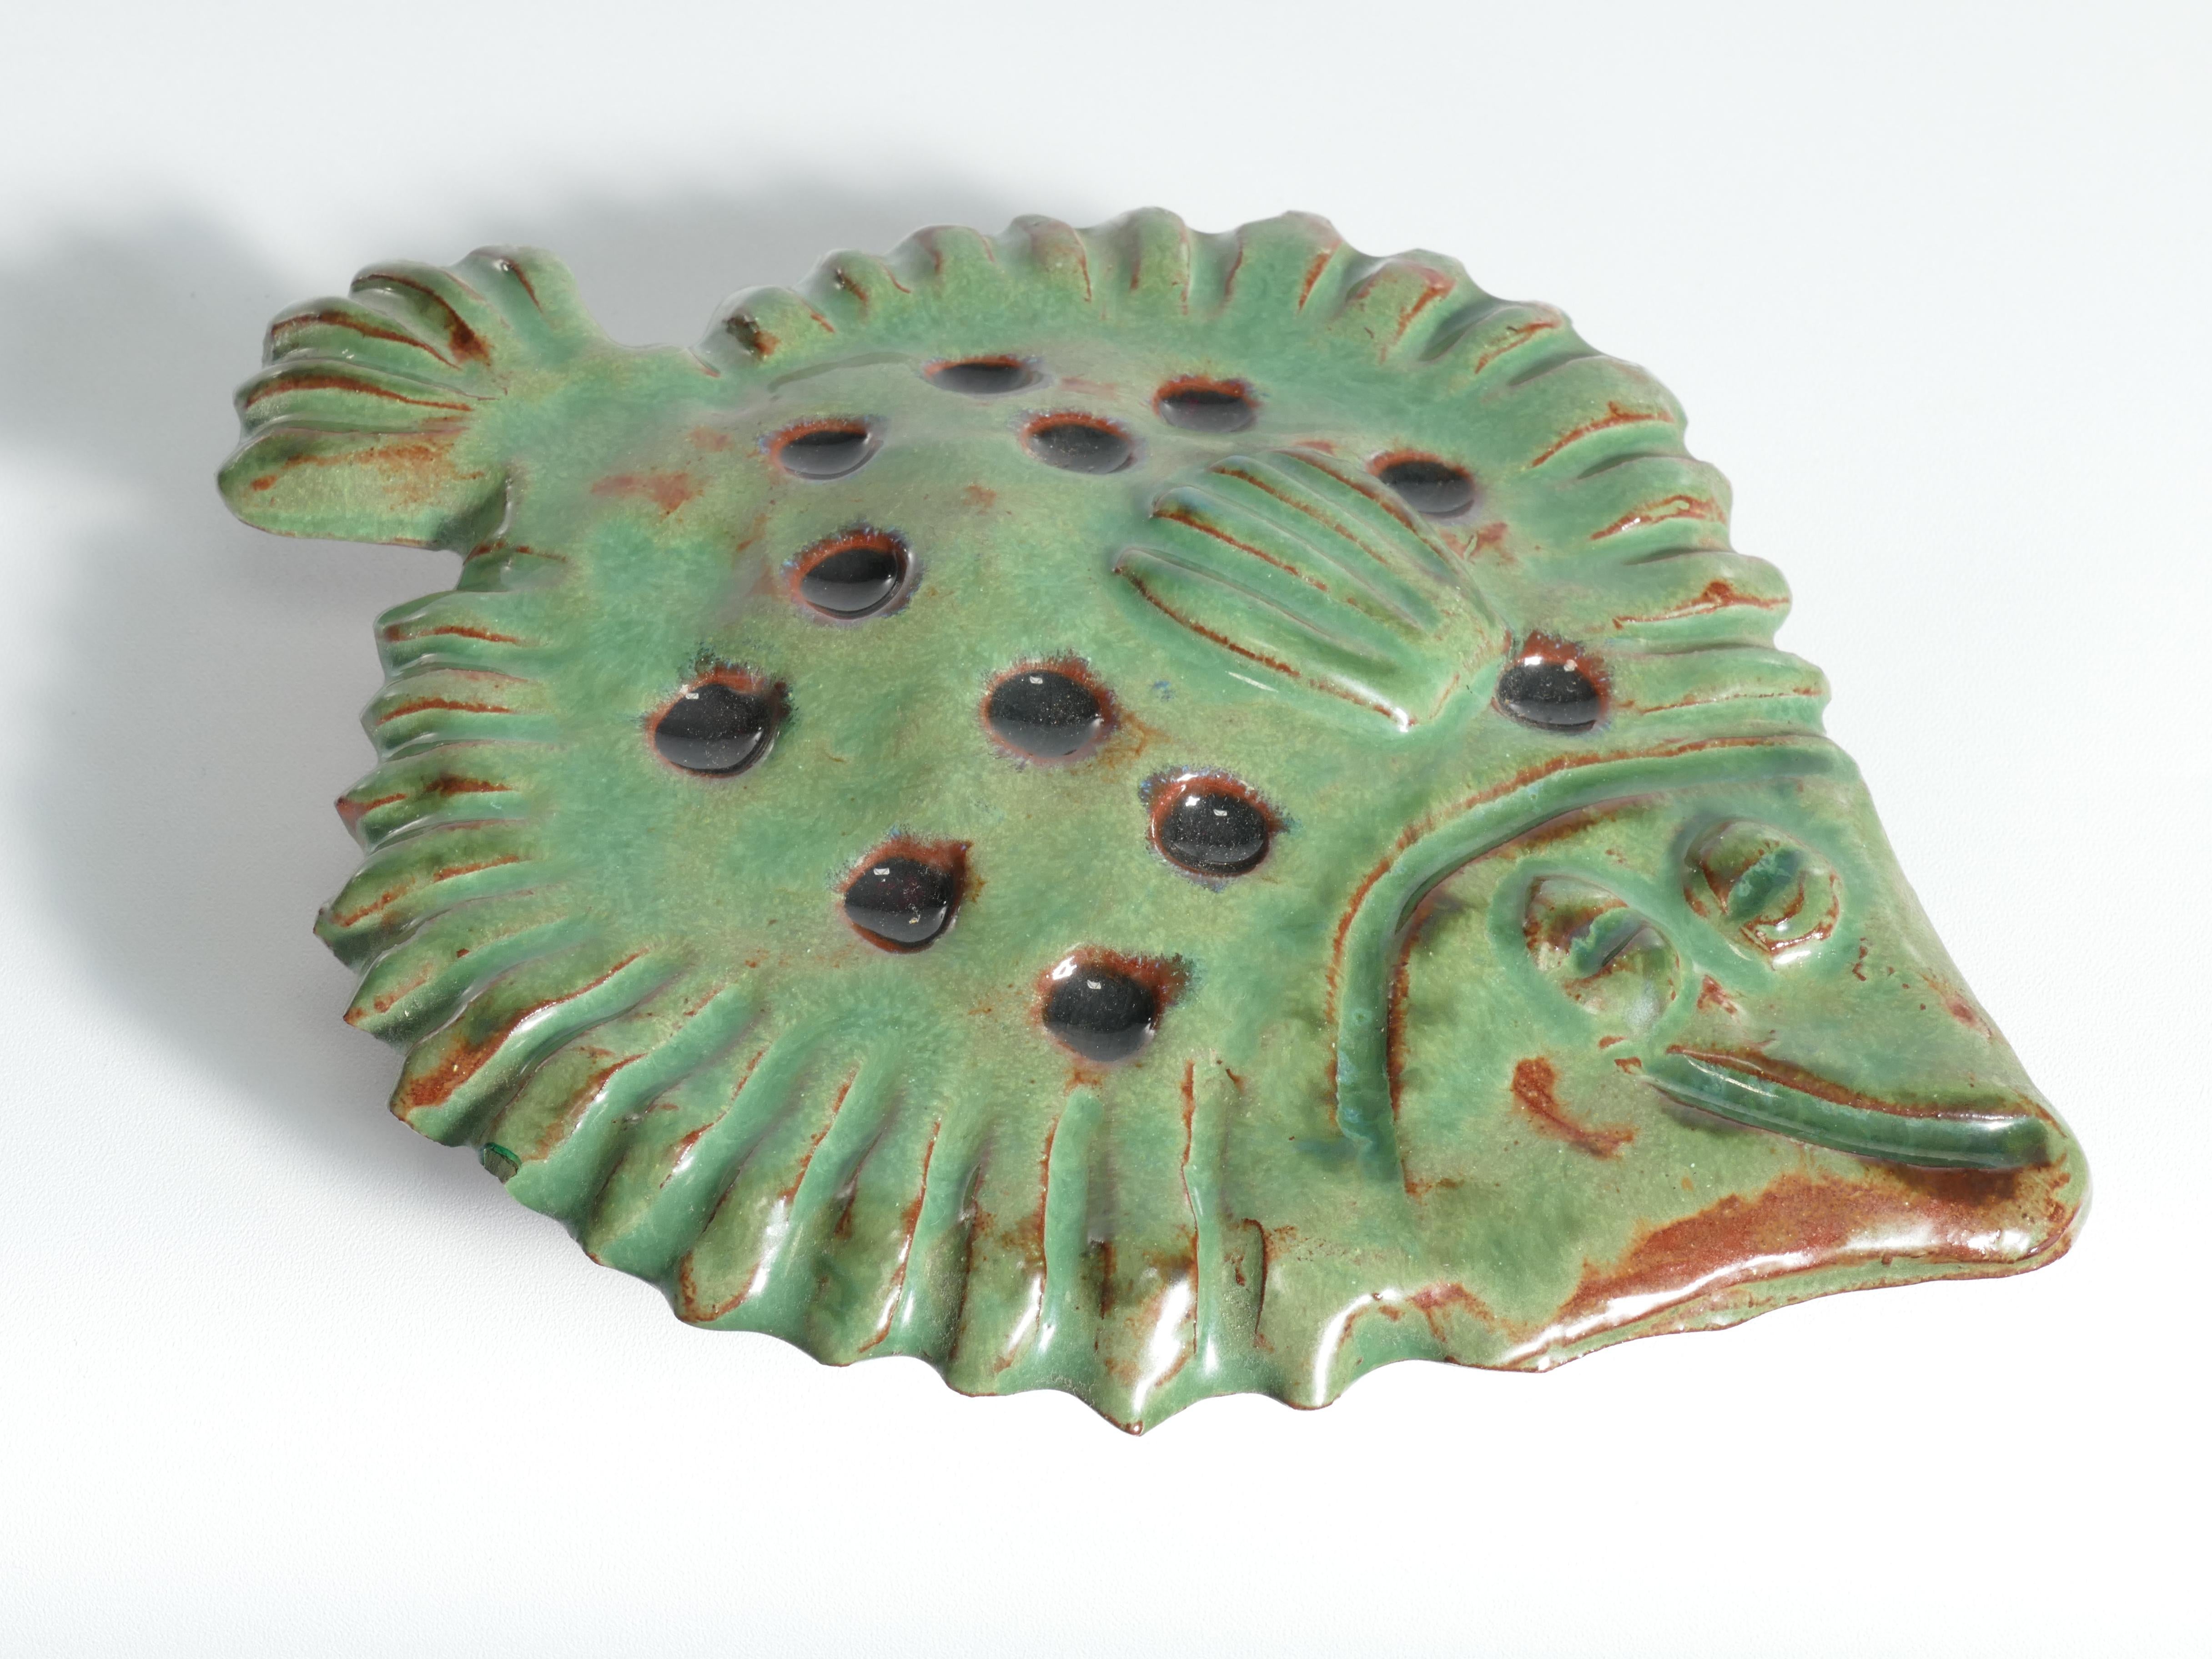 Vintage Green Ceramic Flounder Fish by Allan Hellman, Sweden 1981 For Sale 5